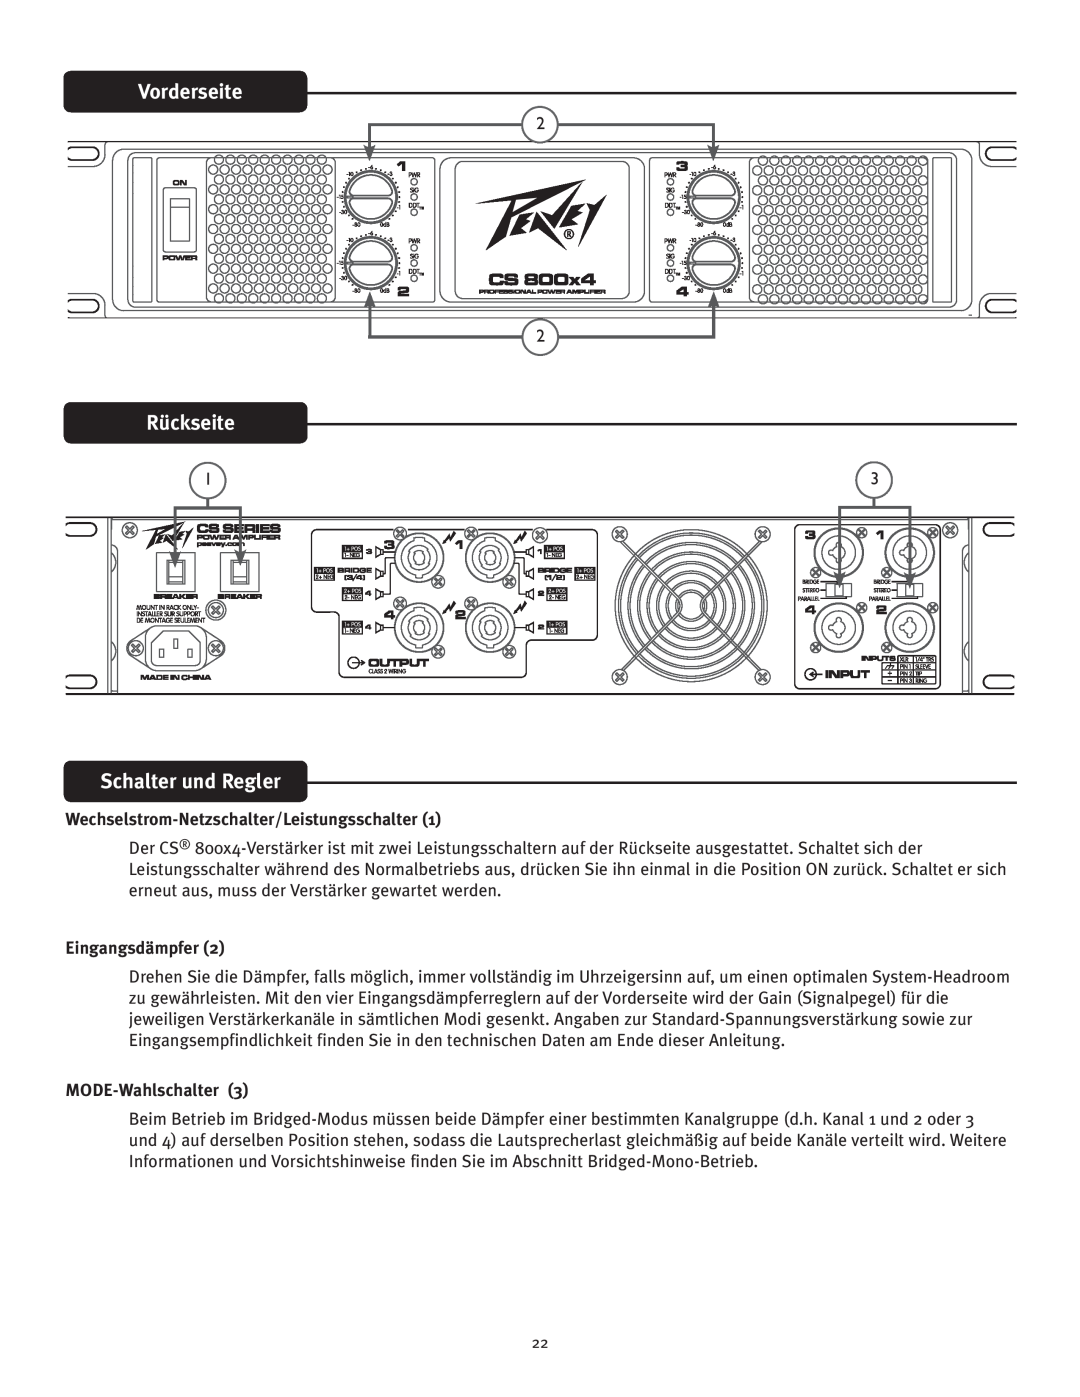 Peavey CS 800x4 Vorderseite, Rückseite, Schalter und Regler, Wechselstrom-Netzschalter/Leistungsschalter1, Eingangsdämpfer 